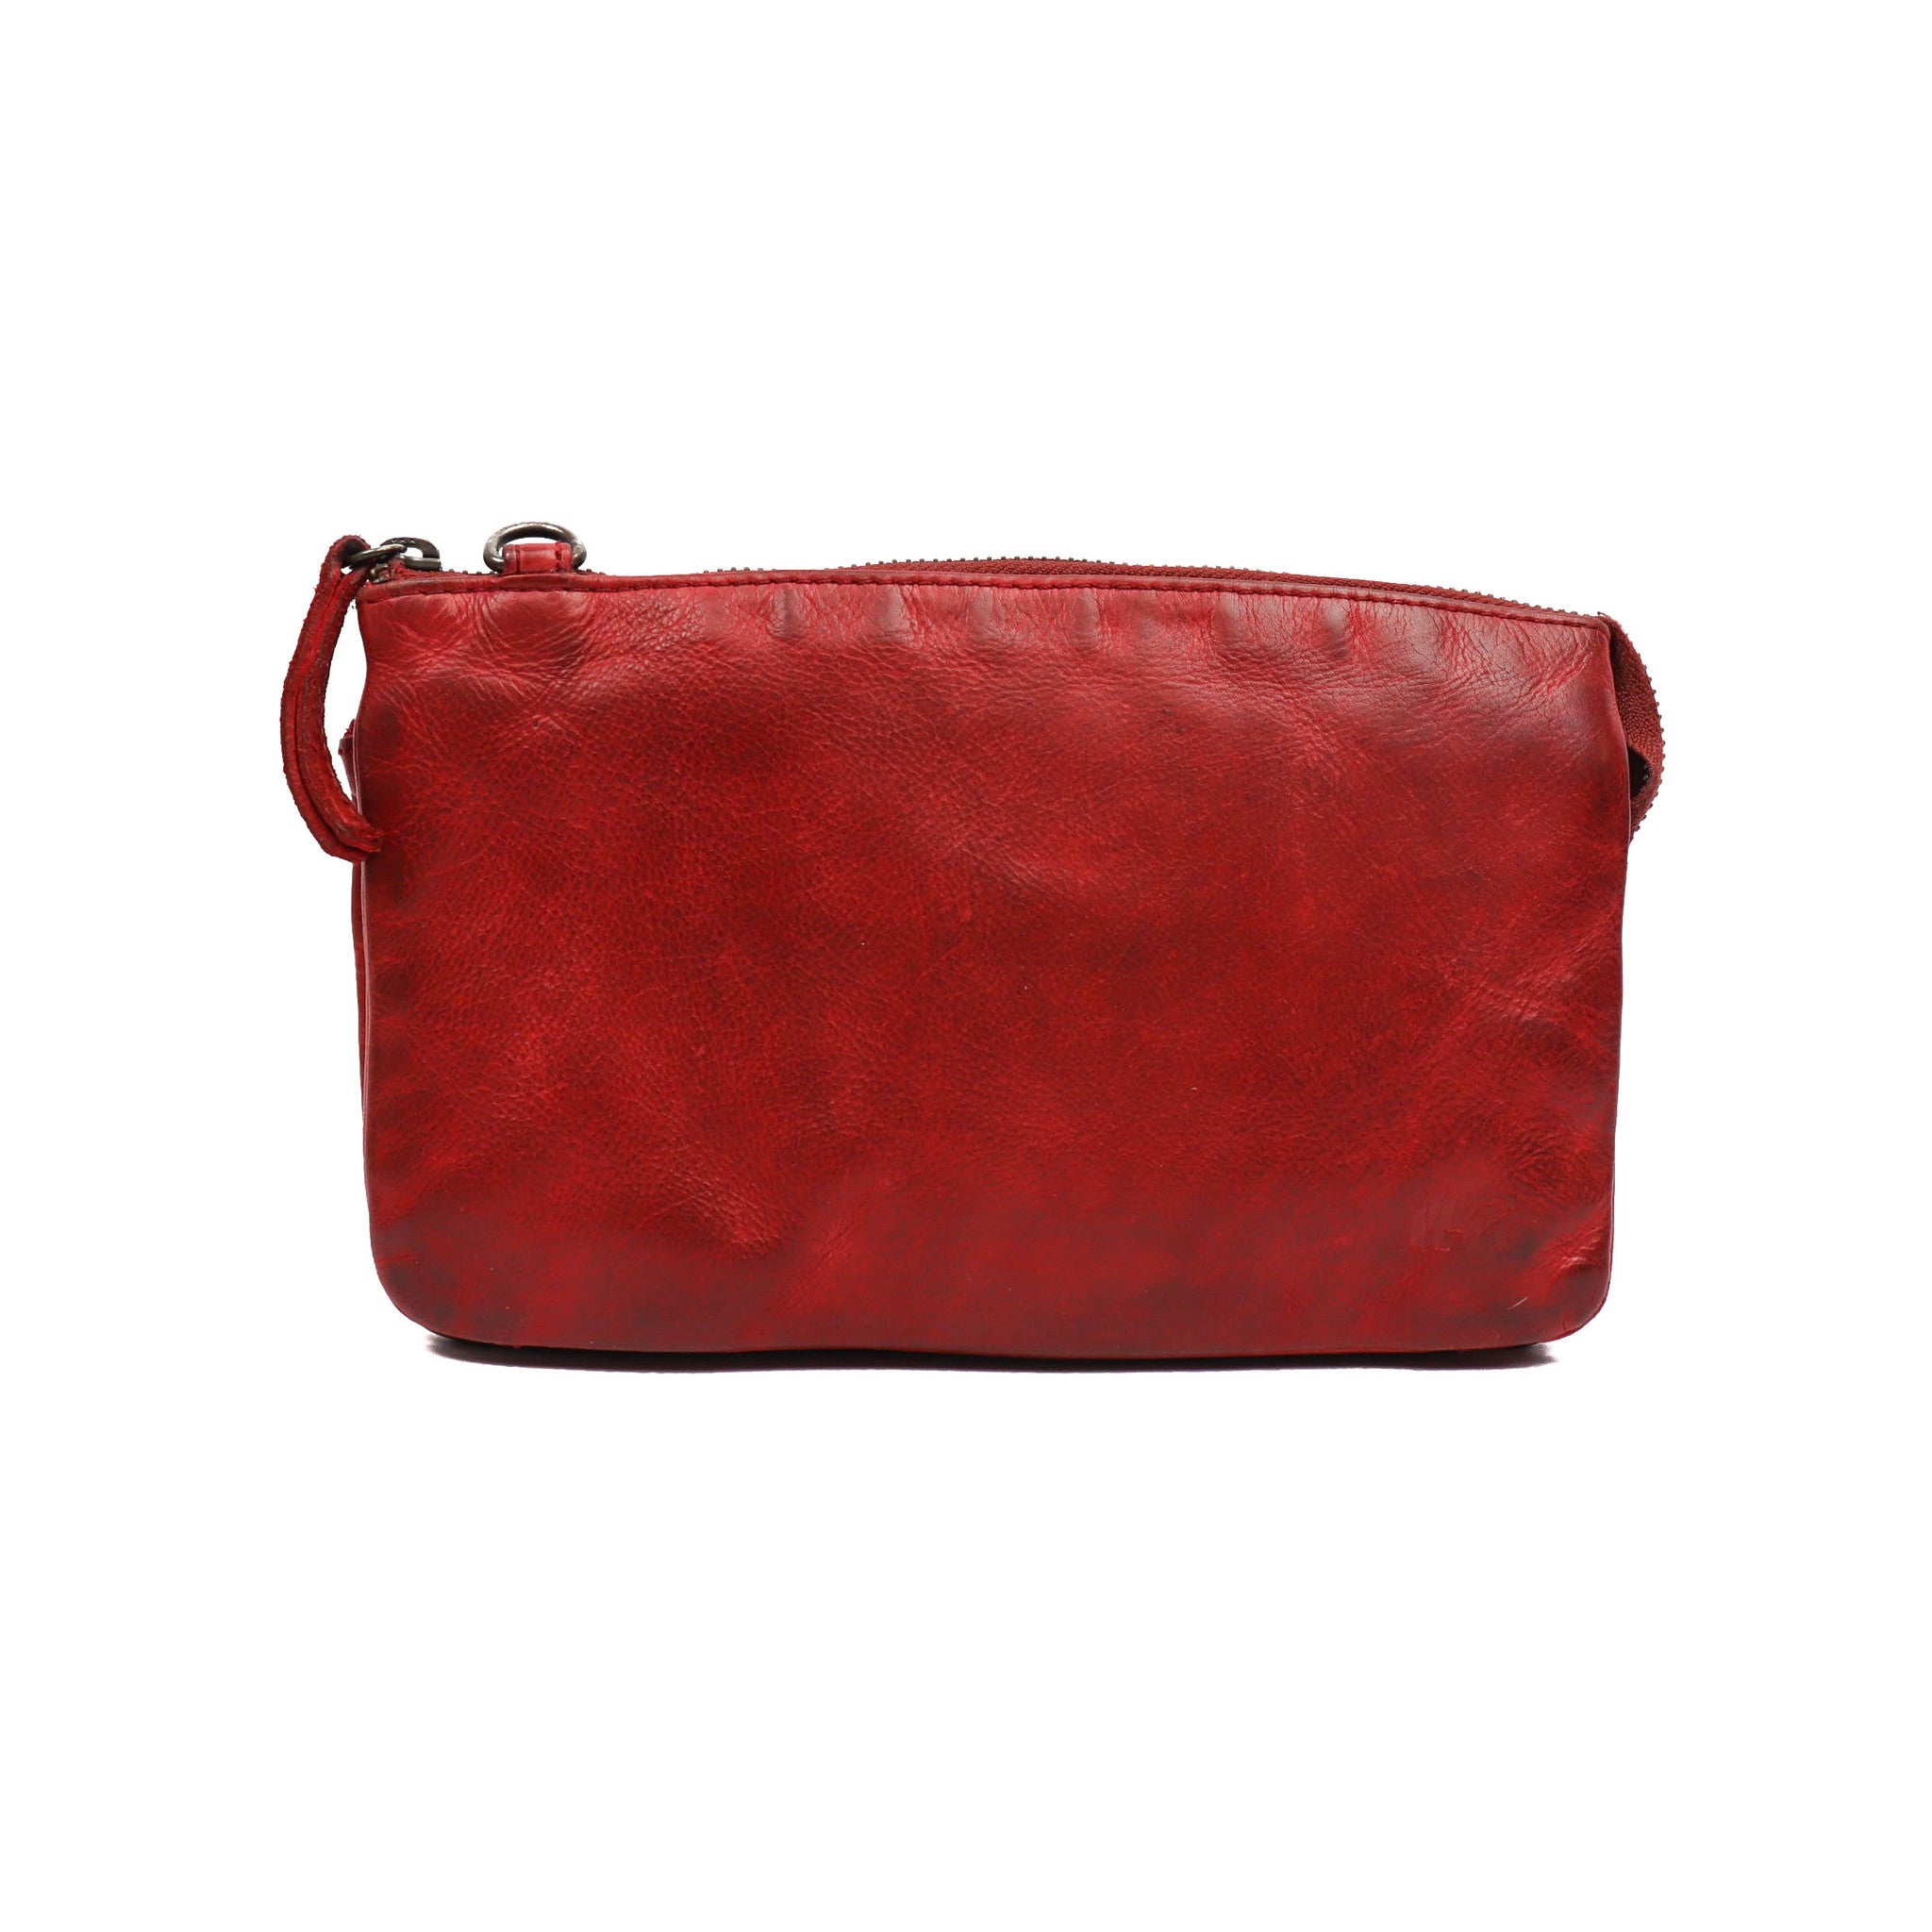 Purse bag 'Uma' red - CL 30996